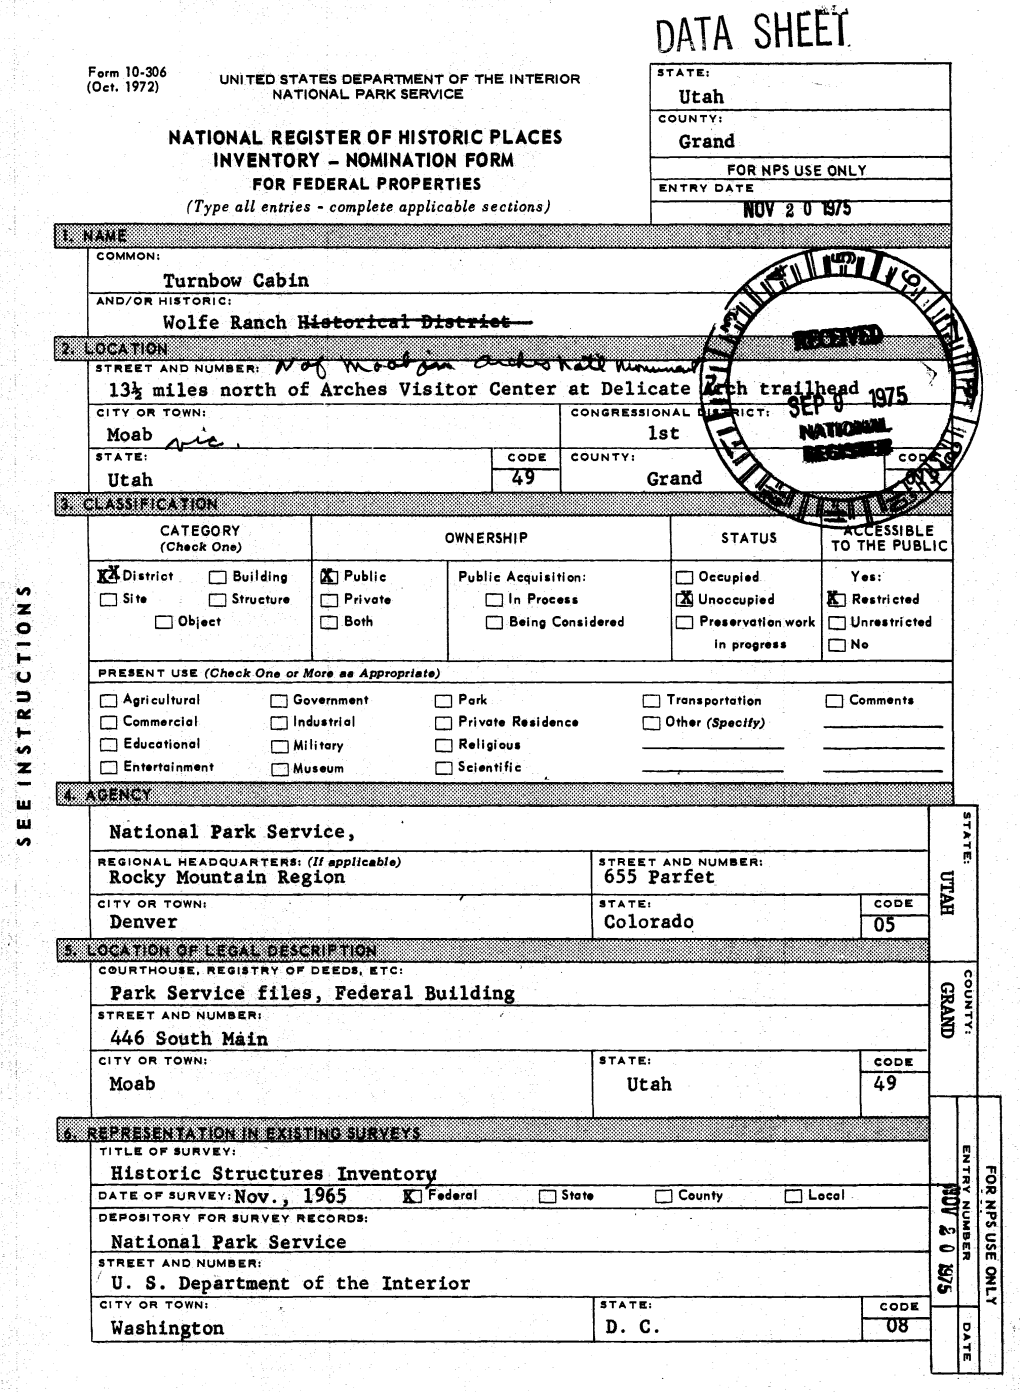 DATA Sheet Form 10-306 (Oct